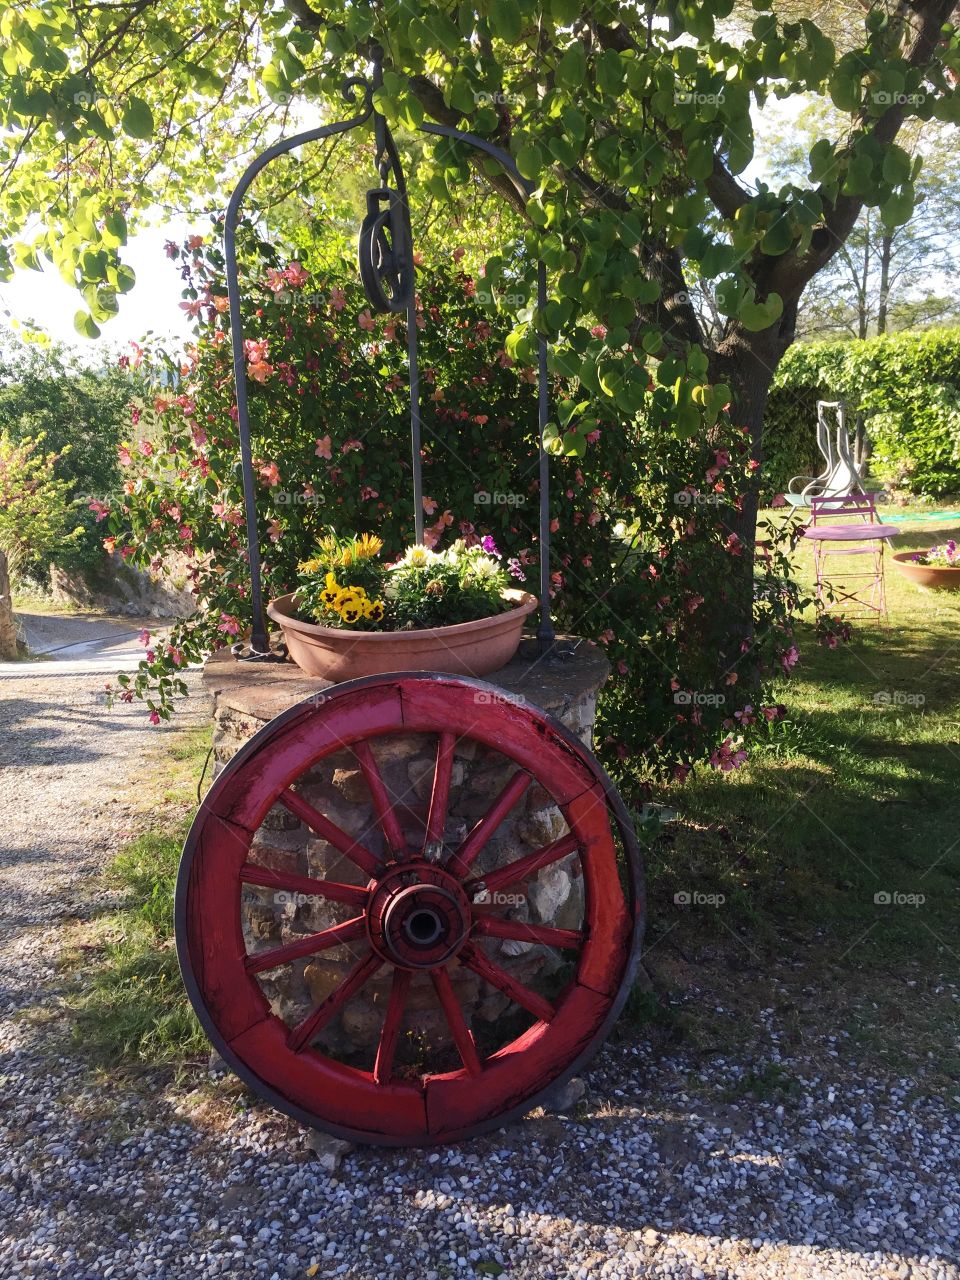 Wheel in Tuscany - Italy